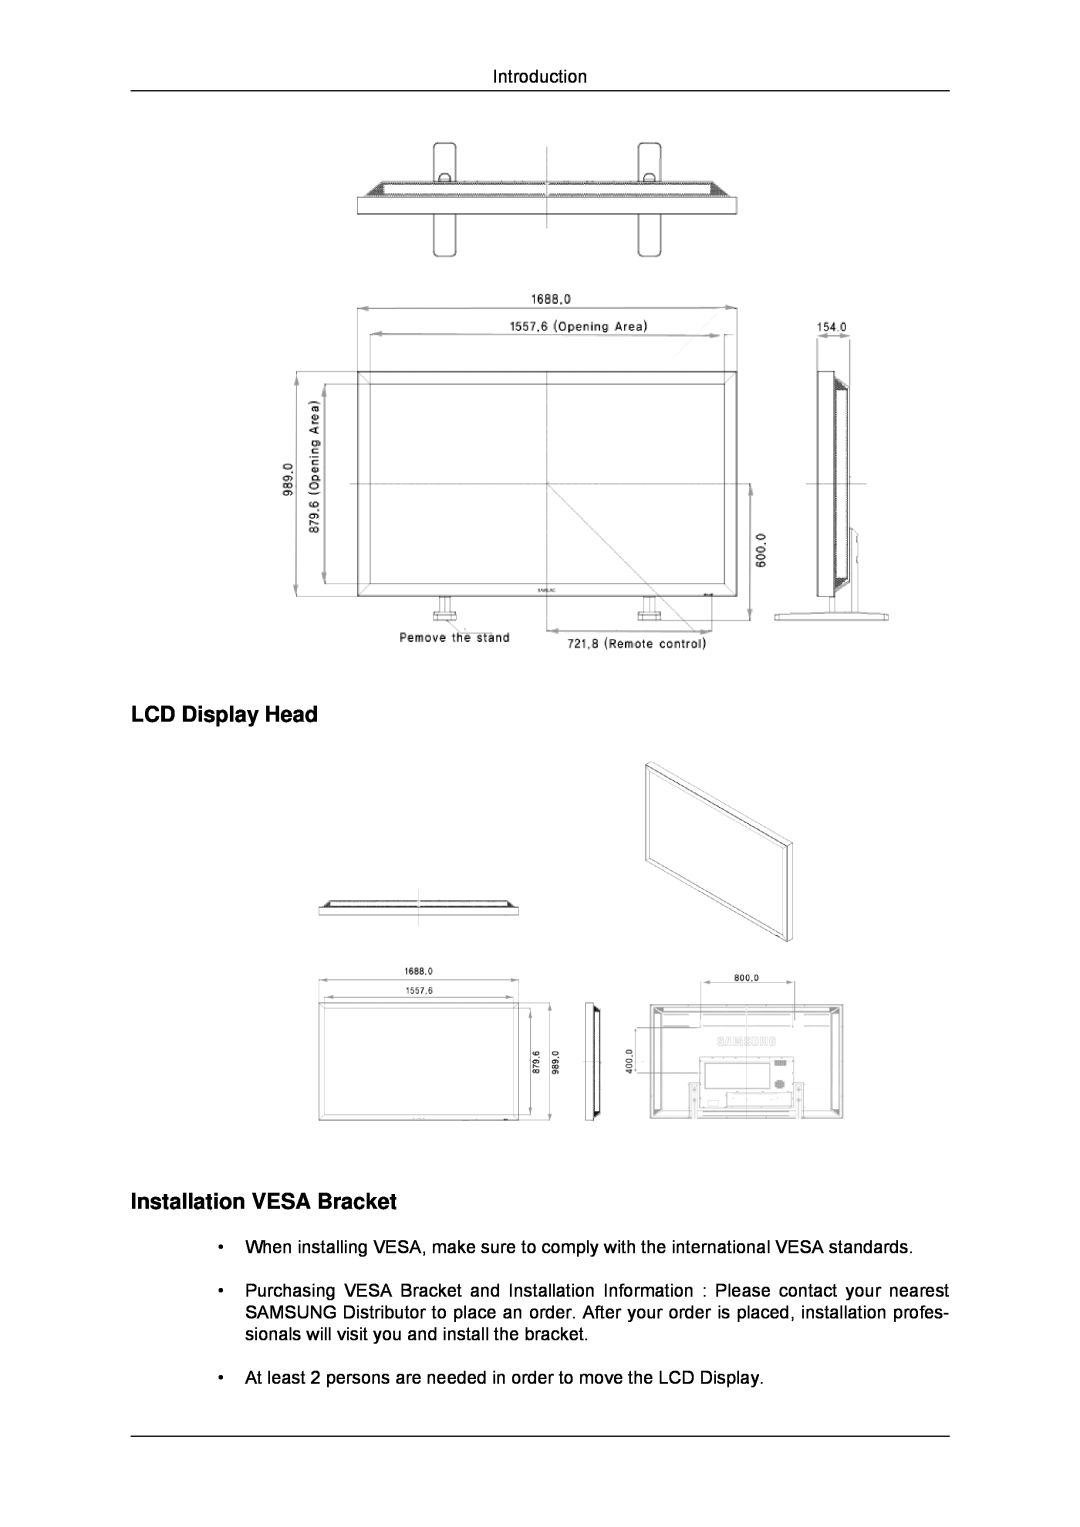 Samsung LH70TCSMBG/XJ, LH70TCUMBG/EN, LH82TCUMBG/EN, LH70TCSMBG/EN, LH70TCUMBG/XJ LCD Display Head Installation VESA Bracket 